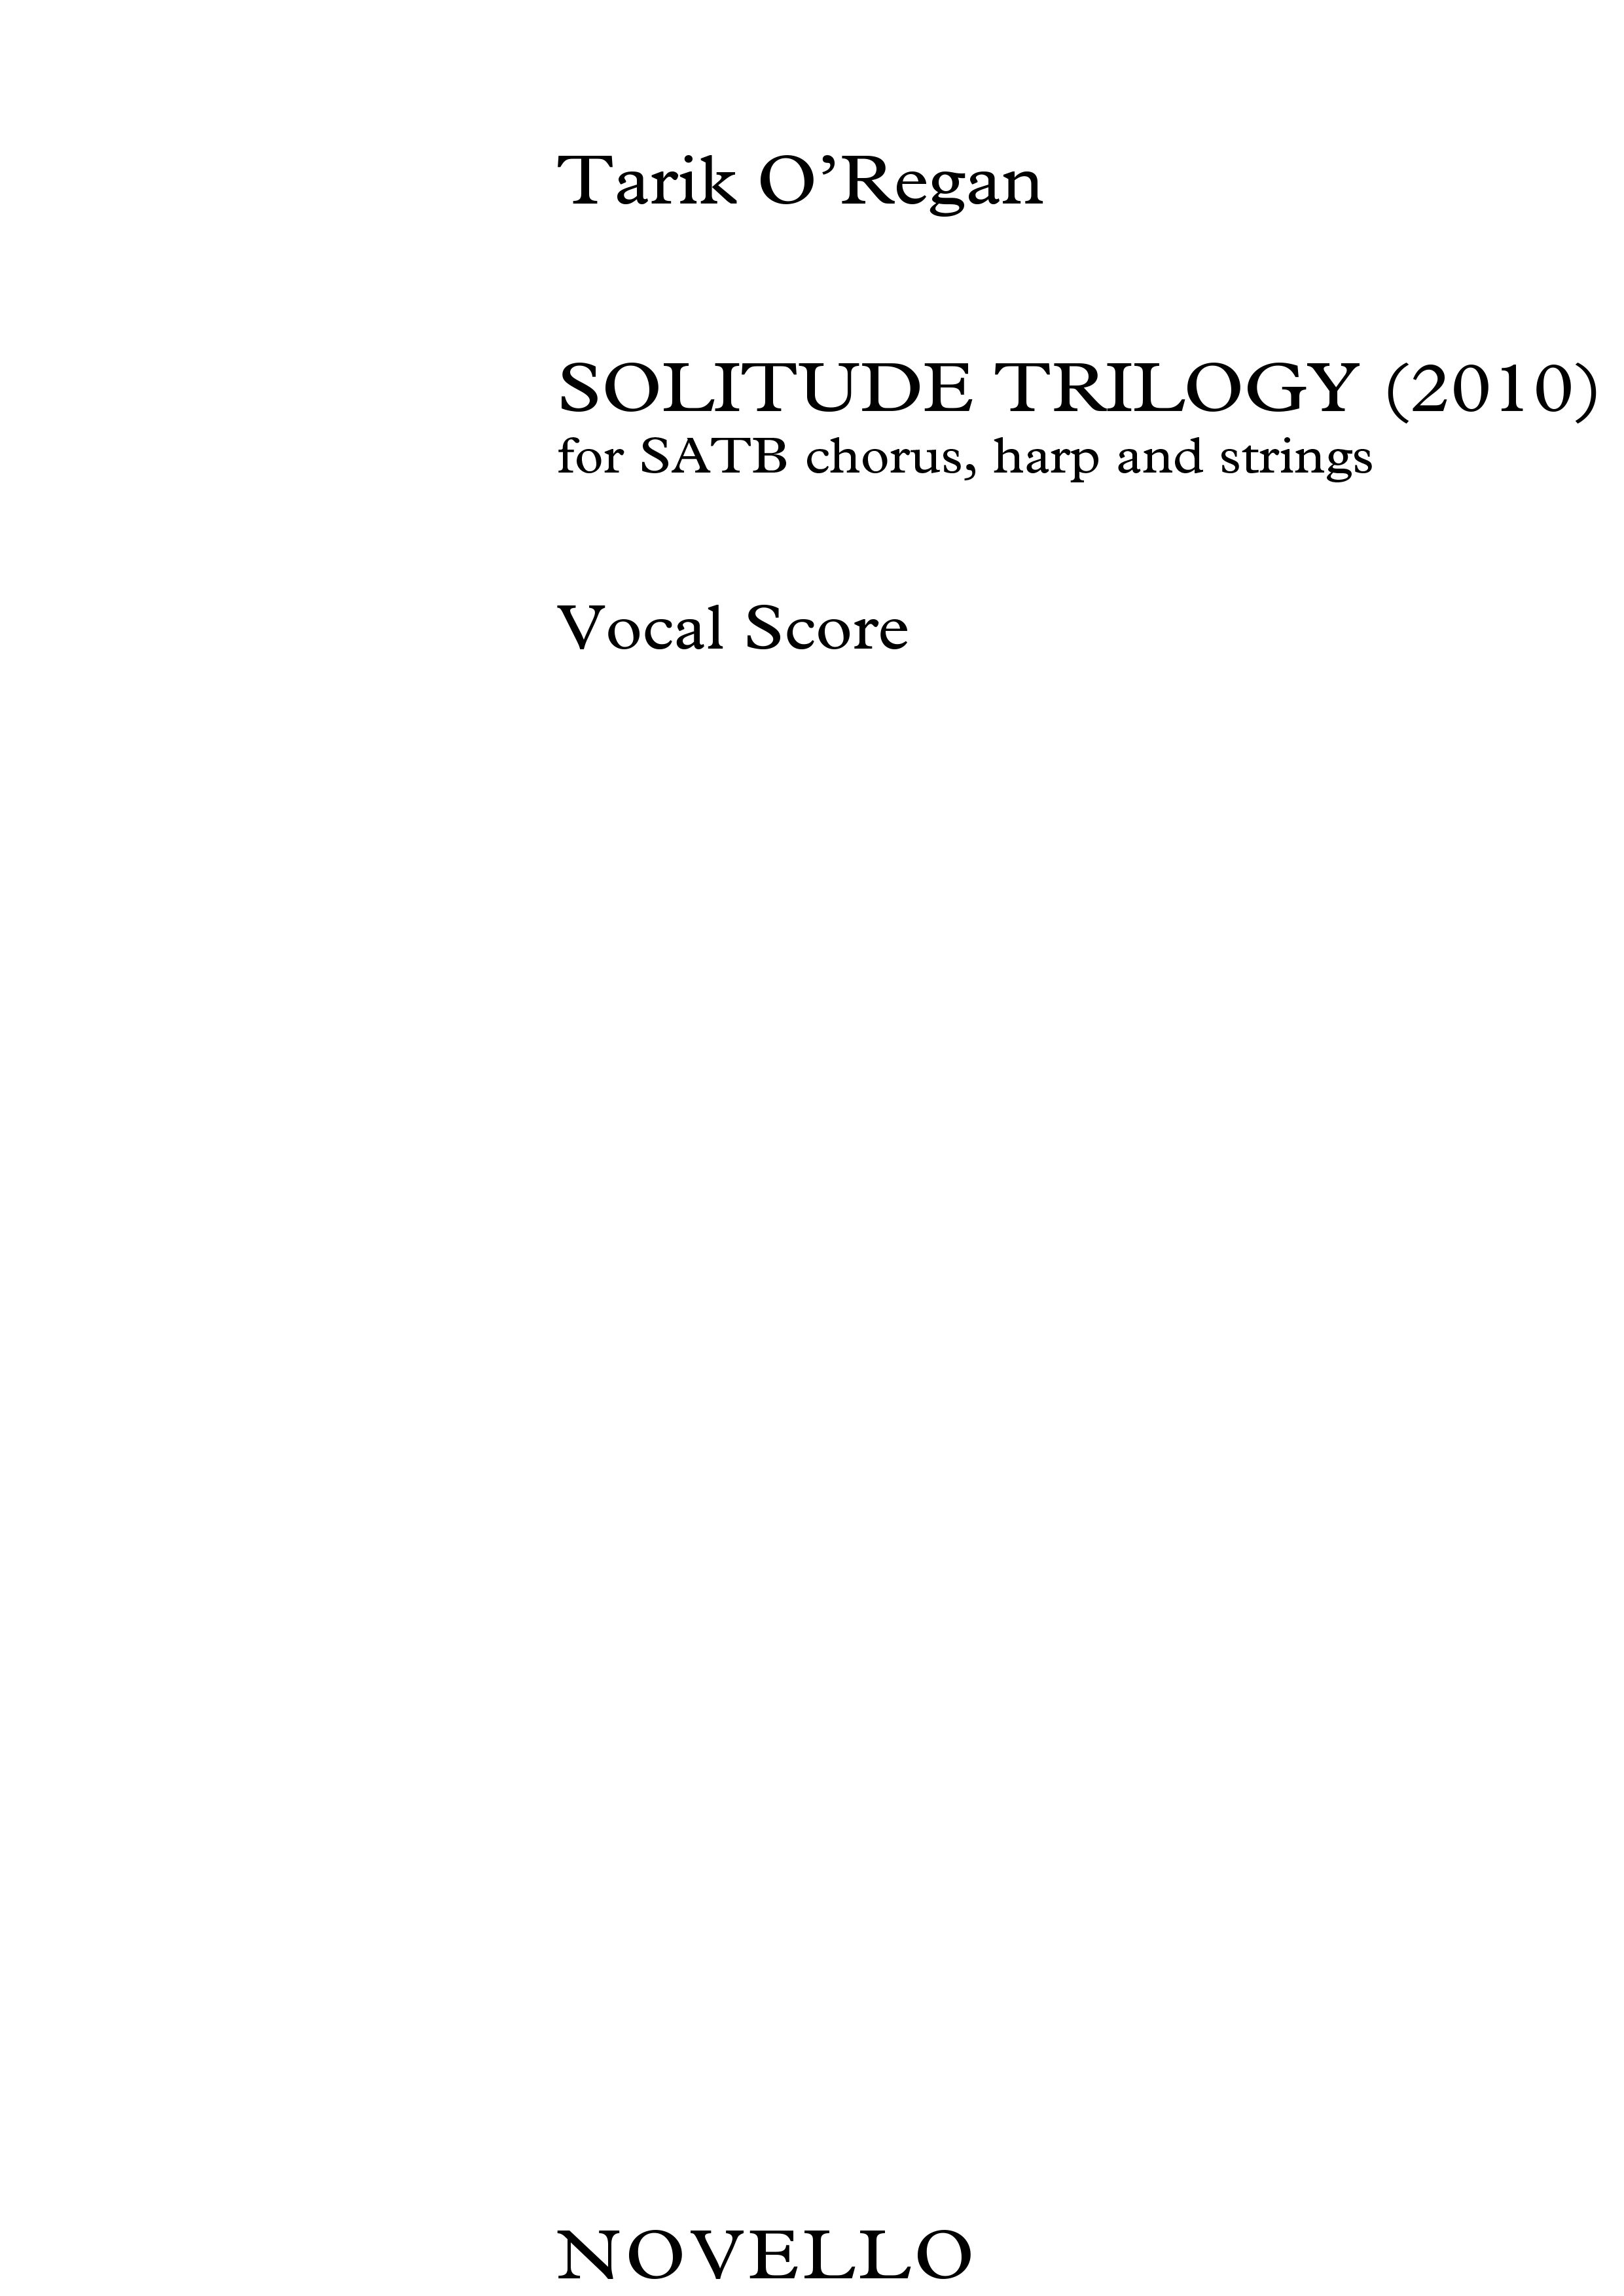 Tarik O'Regan: Solitude Trilogy: SATB: Vocal Score